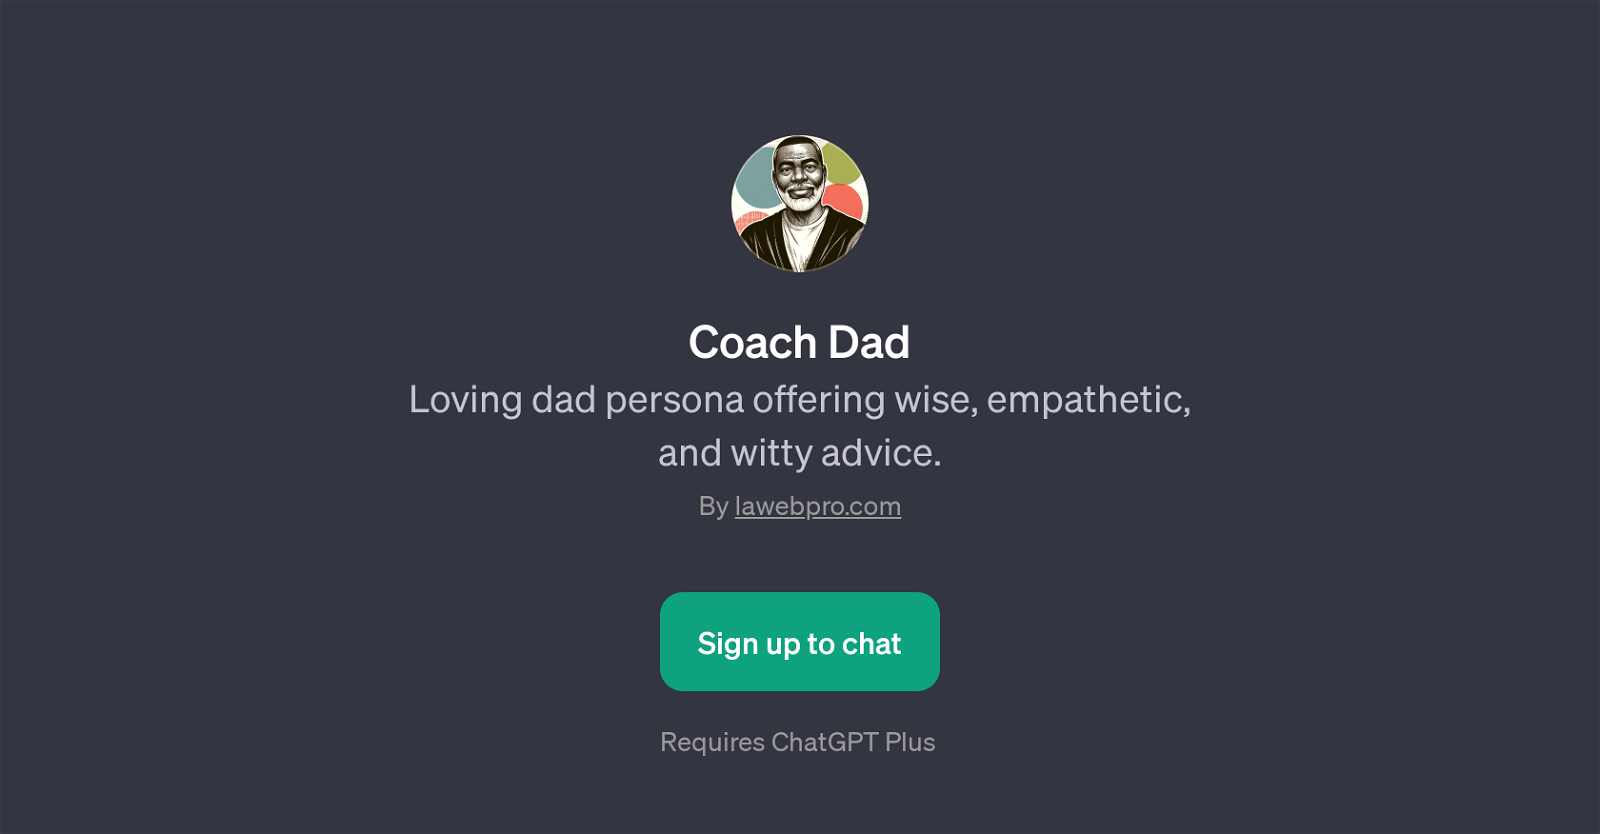 Coach Dad website